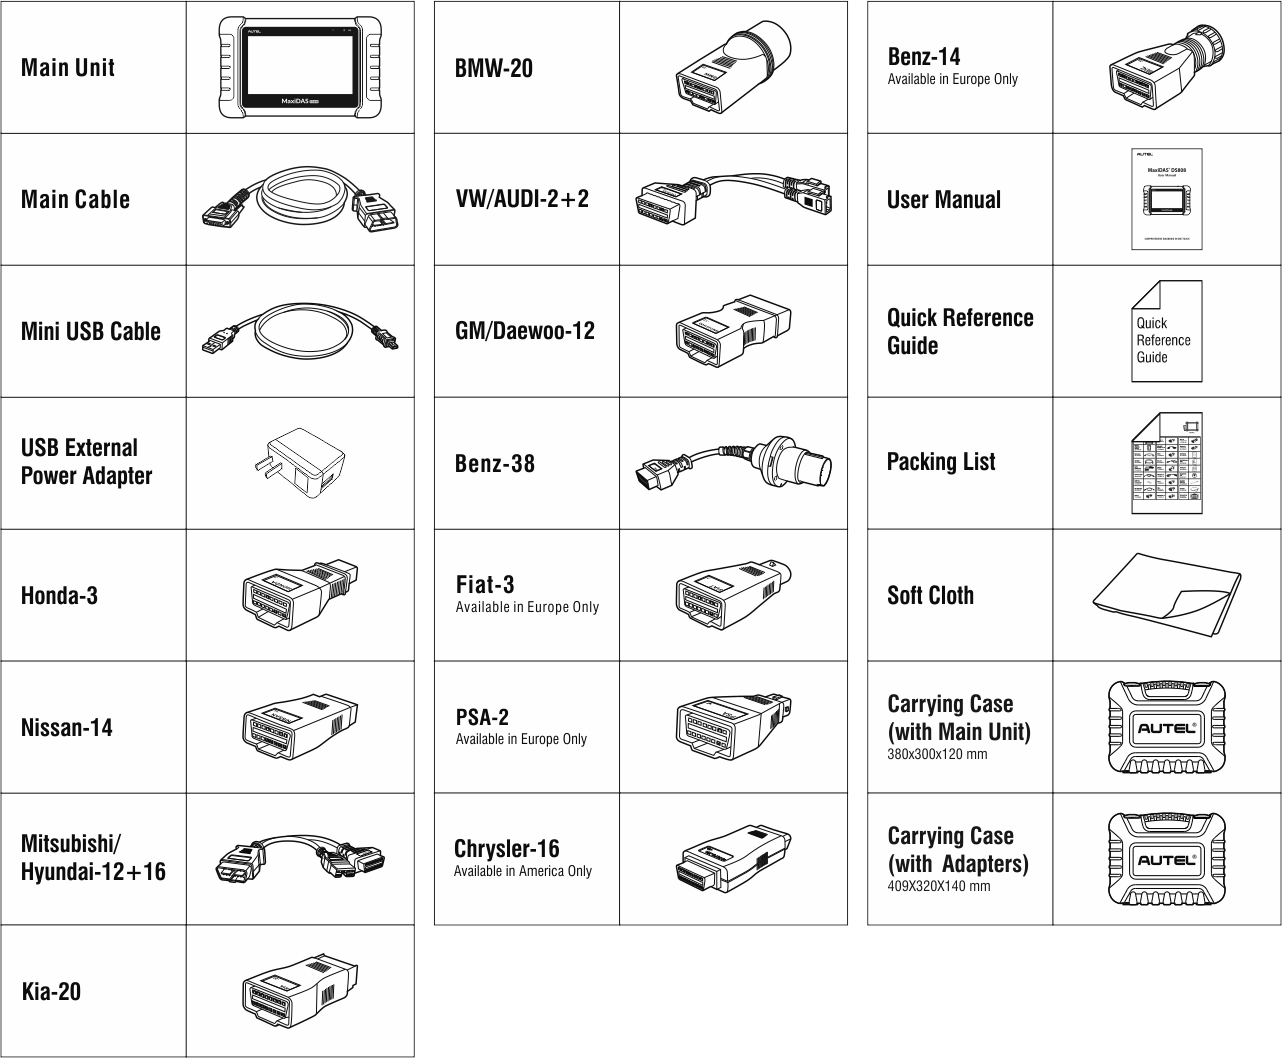 Autel DS808K Diagnostic Tool Package List